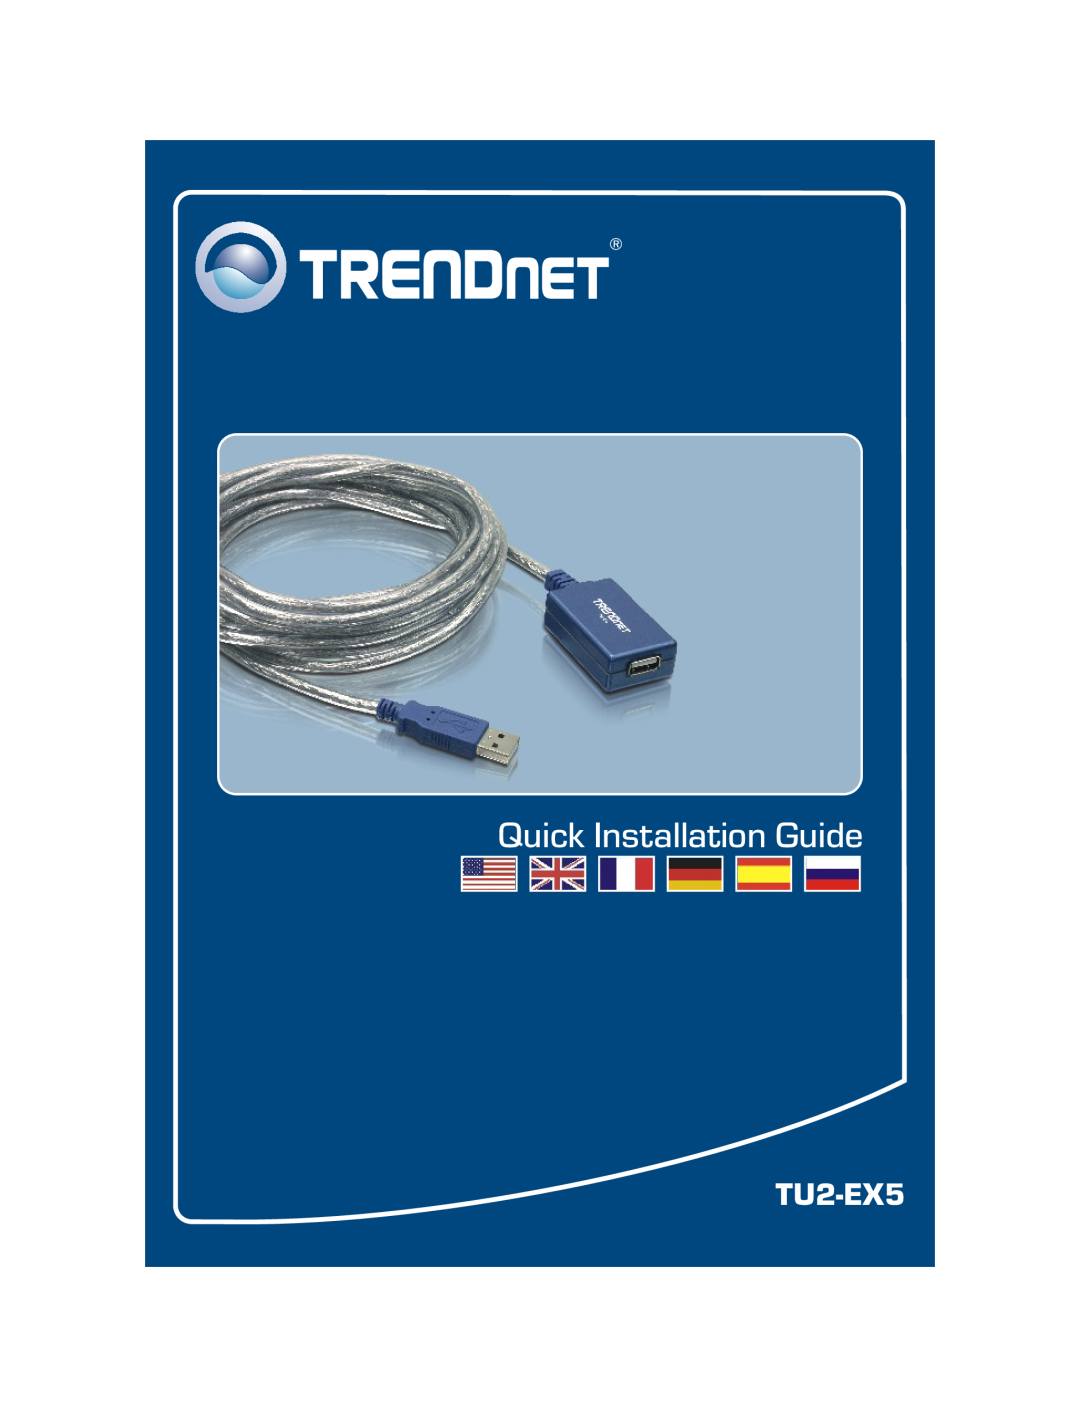 TRENDnet TU2-EX5 manual Quick Installation Guide 